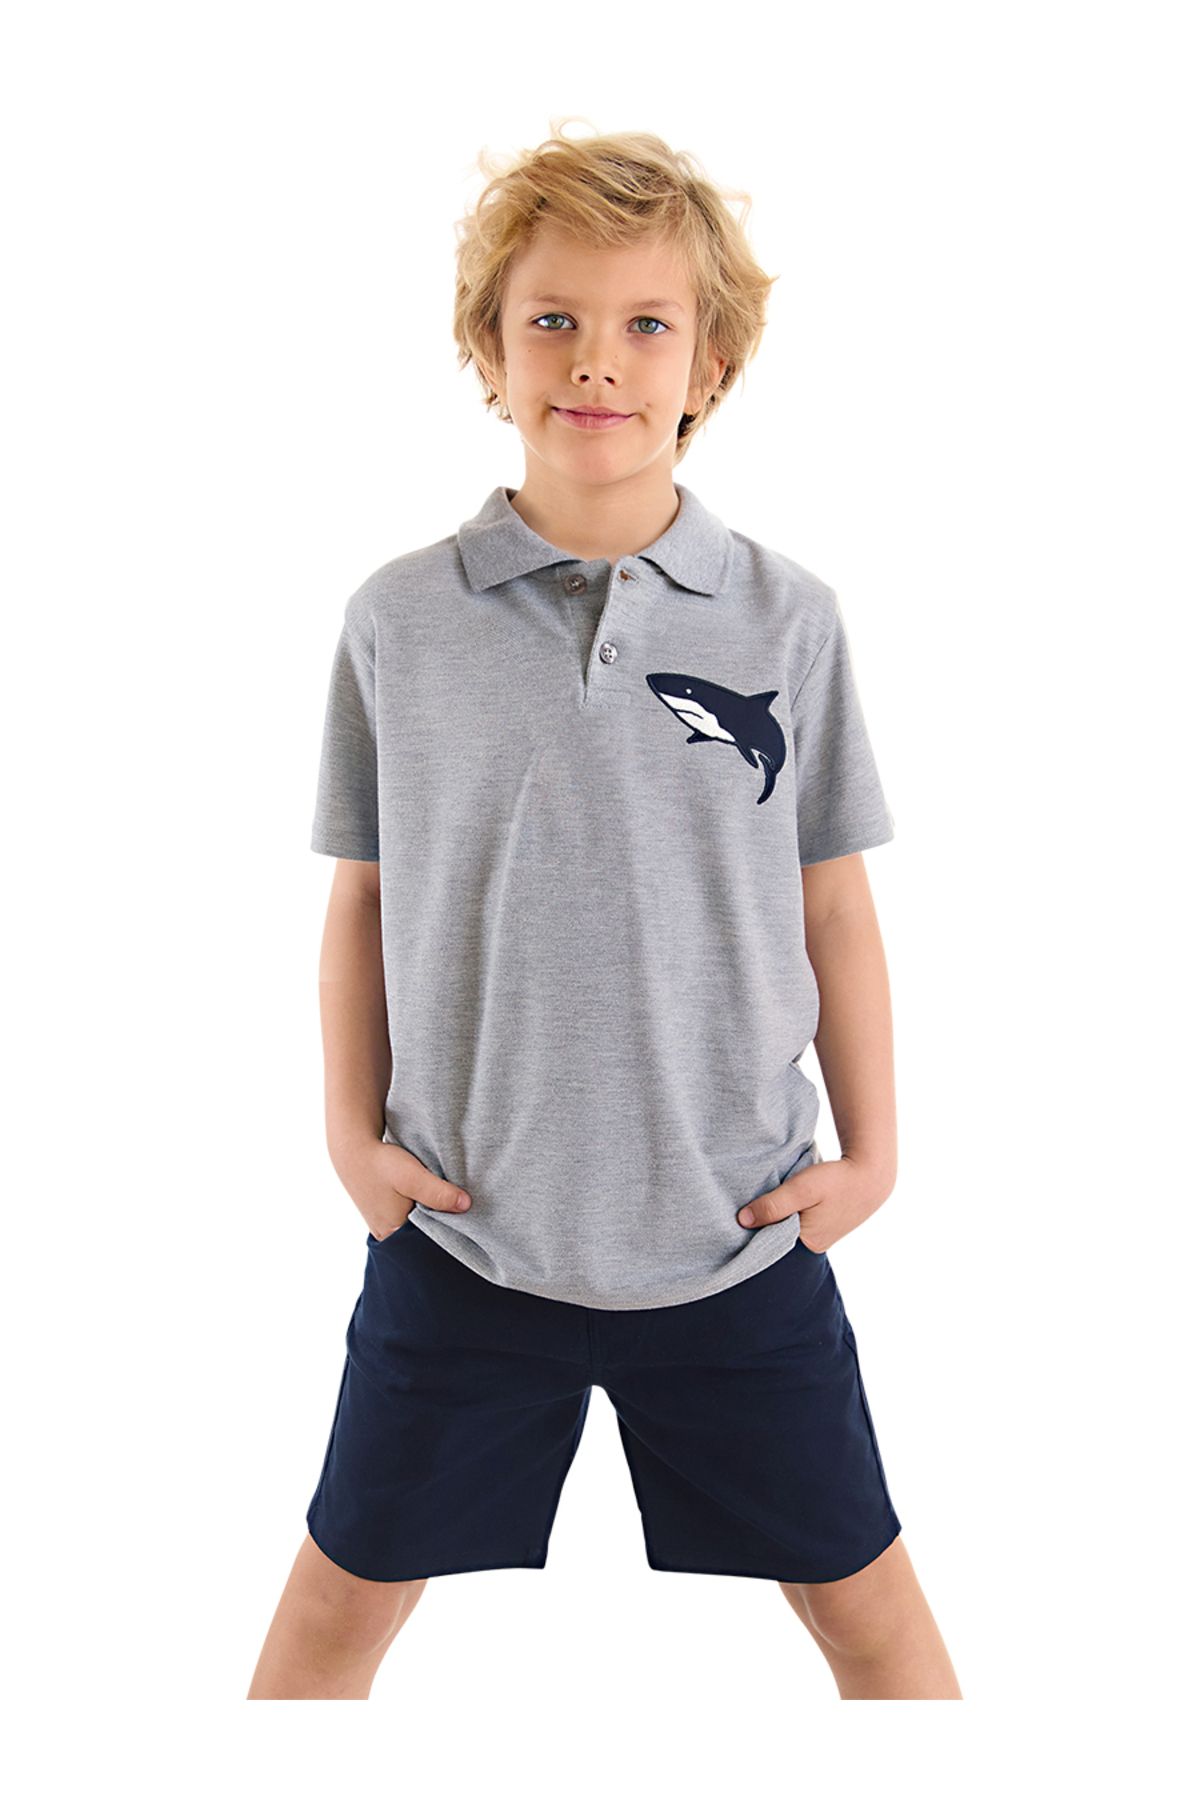 MSHB&G Shark Erkek Çocuk Yazlık Polo Yaka T-shirt Gabardin Şort Takım